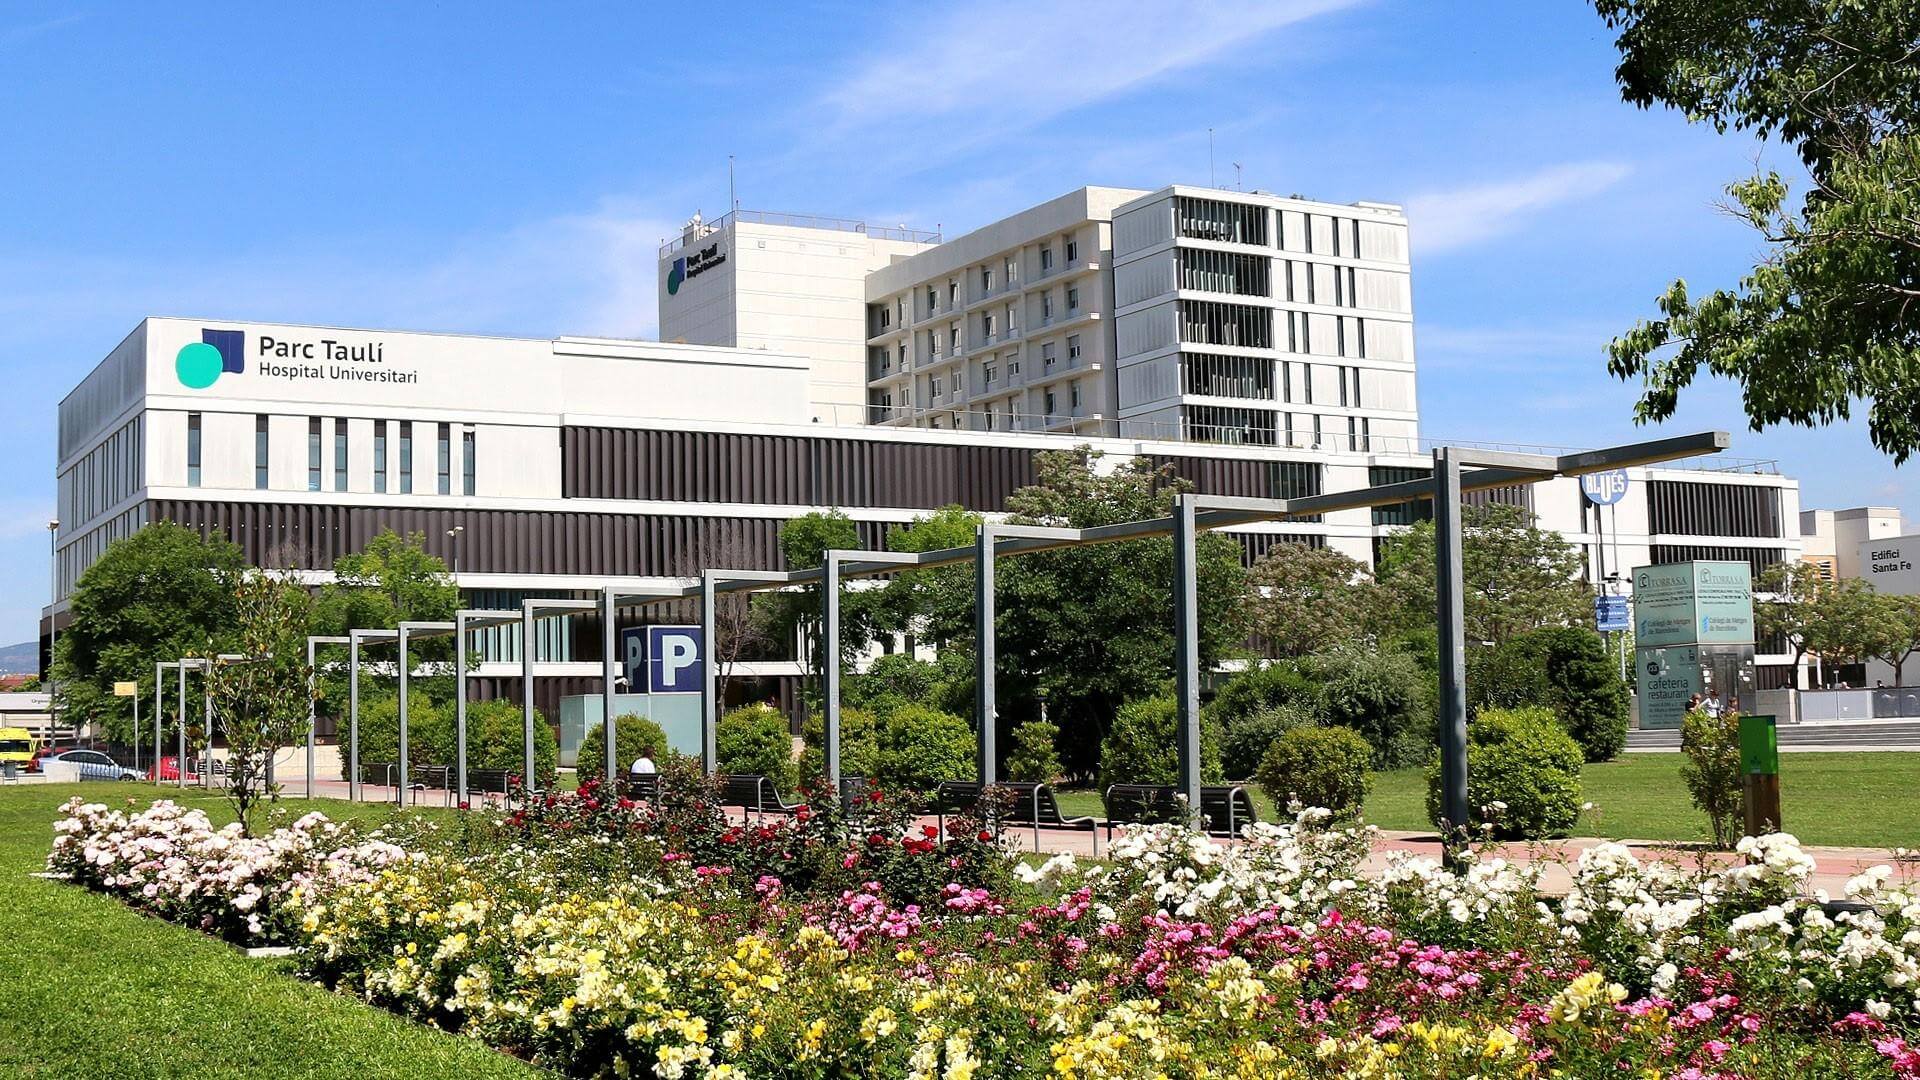 Hospital Parc Taulí